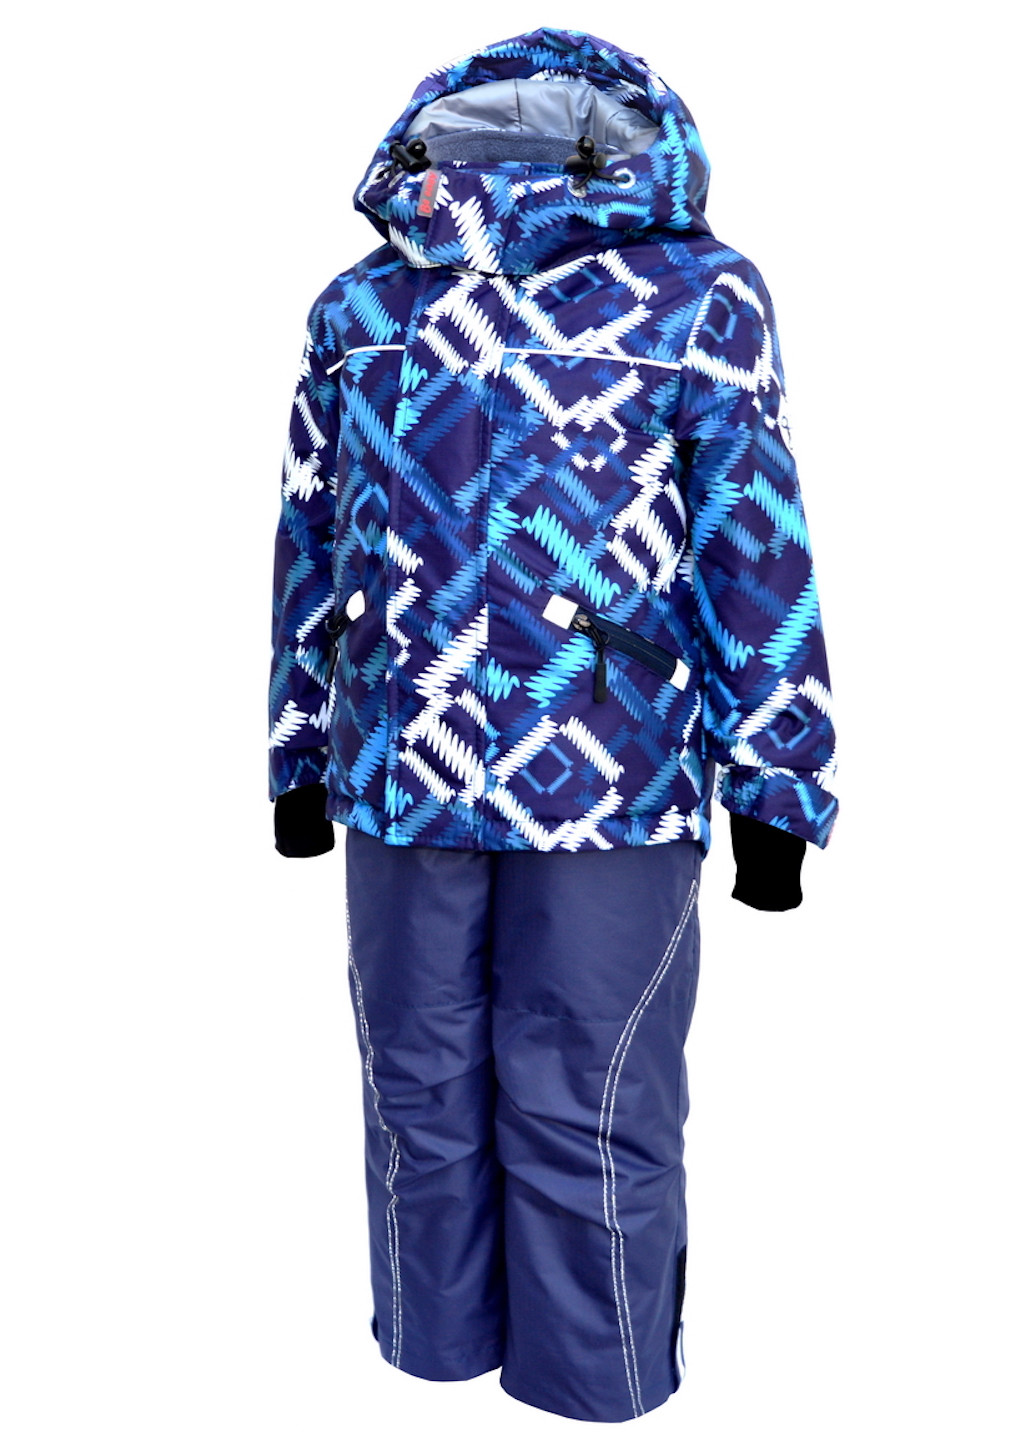 Синий зимний зимний костюм (куртка+полукомбинезон) из мембранной ткани Be easy